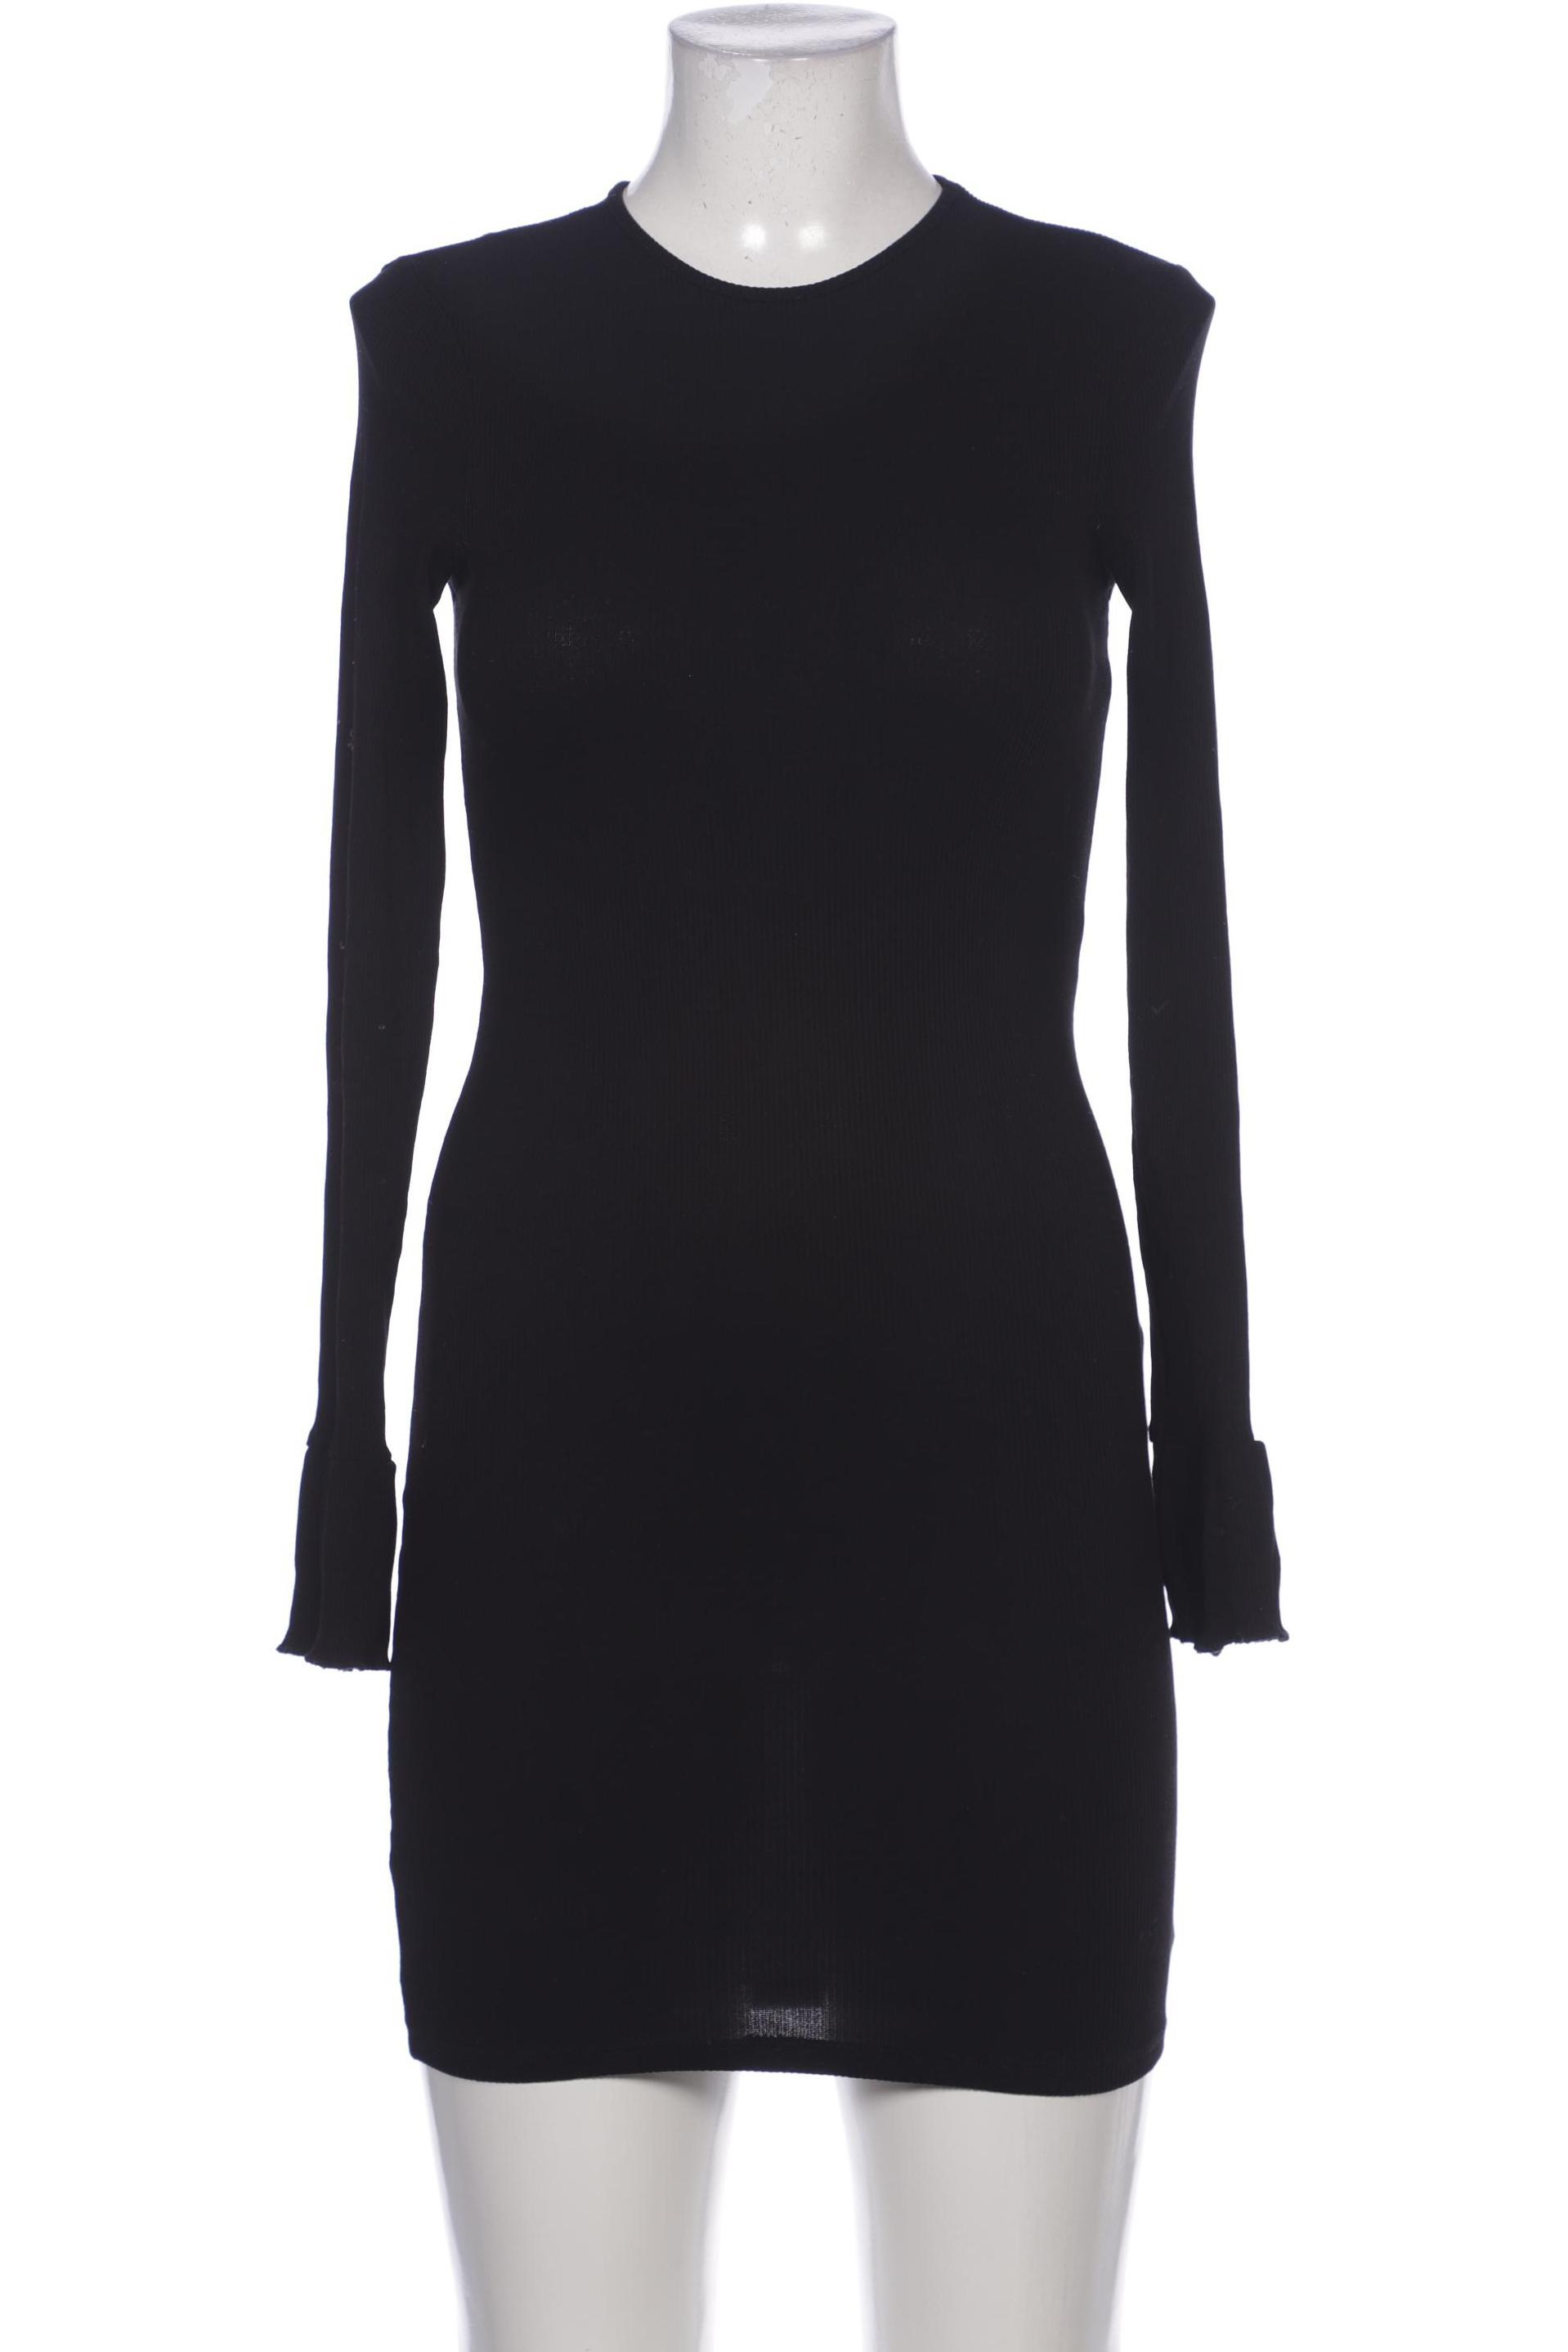 asos Damen Kleid, schwarz, Gr. 36 von asos